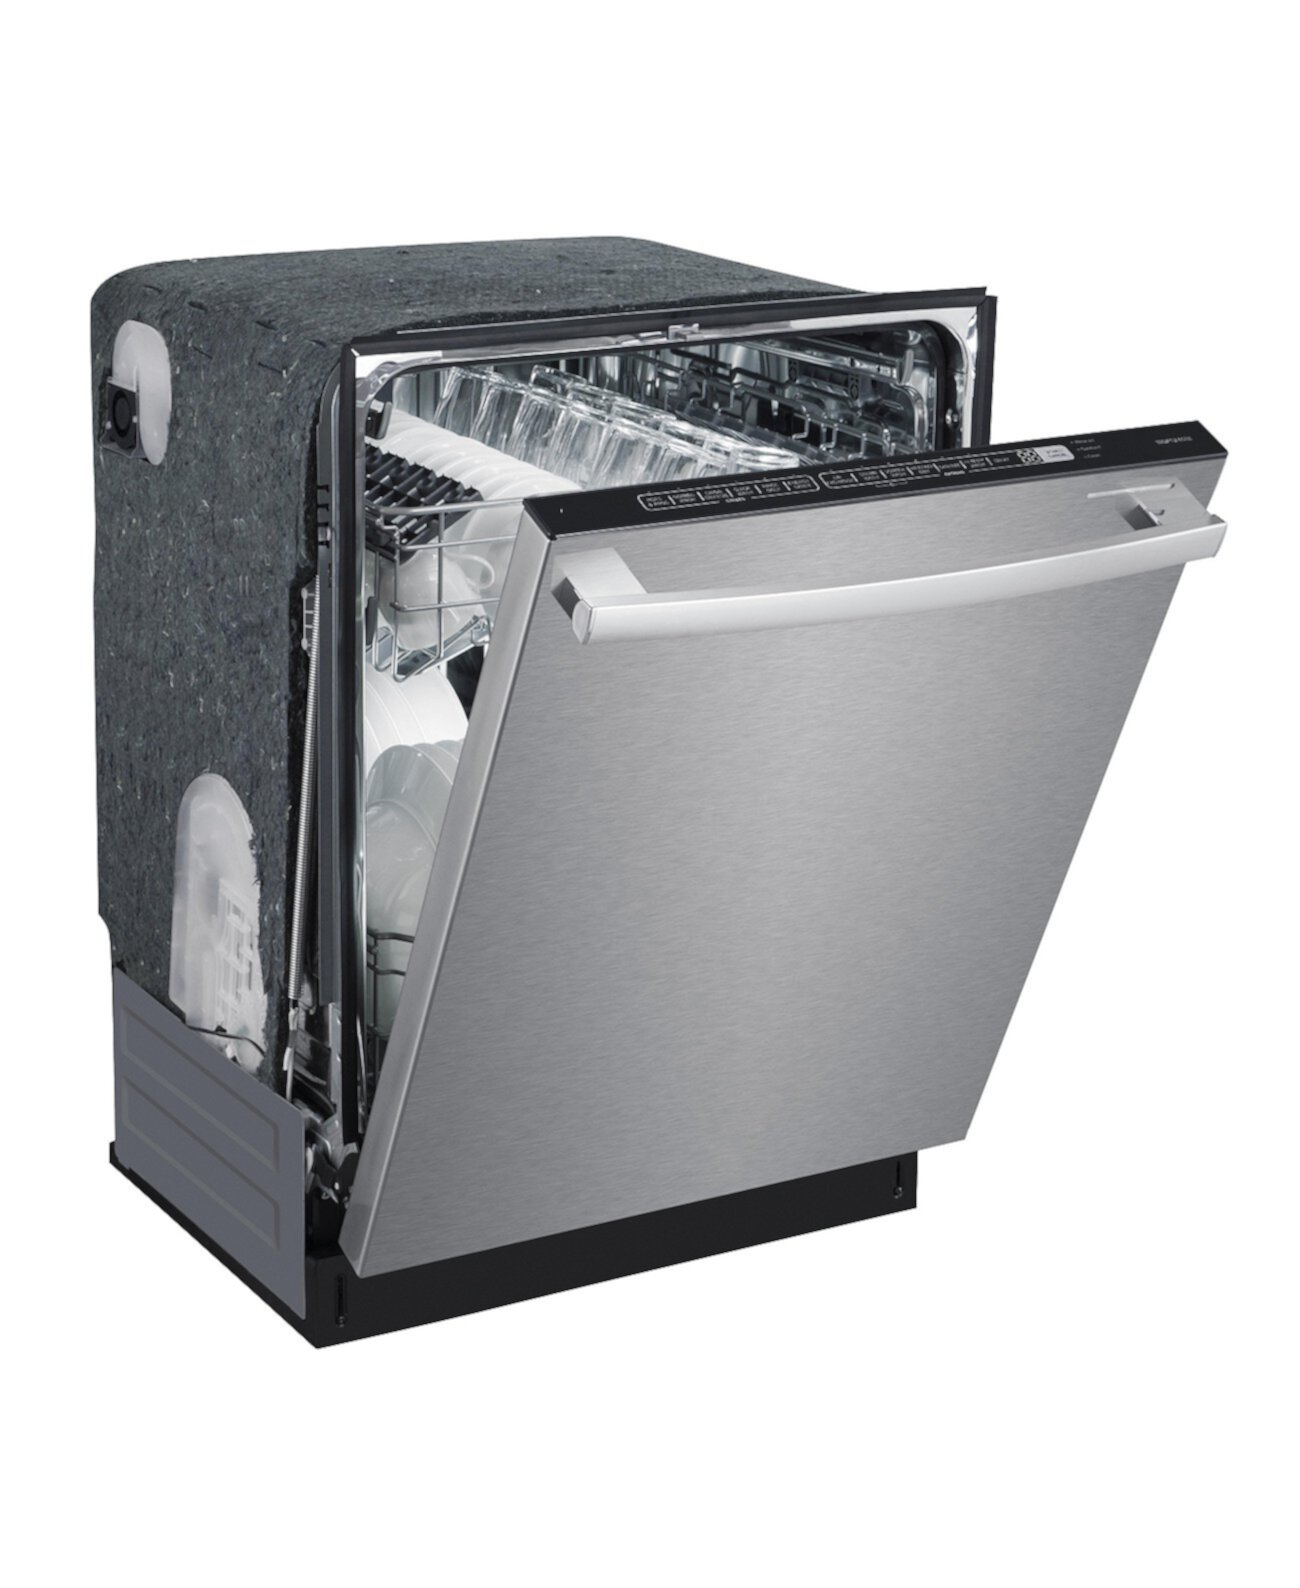 Energy Star 24-дюймовая встраиваемая посудомоечная машина с высокой ванной из нержавеющей стали с системой Smart Wash и сушкой с подогревом SPT Appliance Inc.